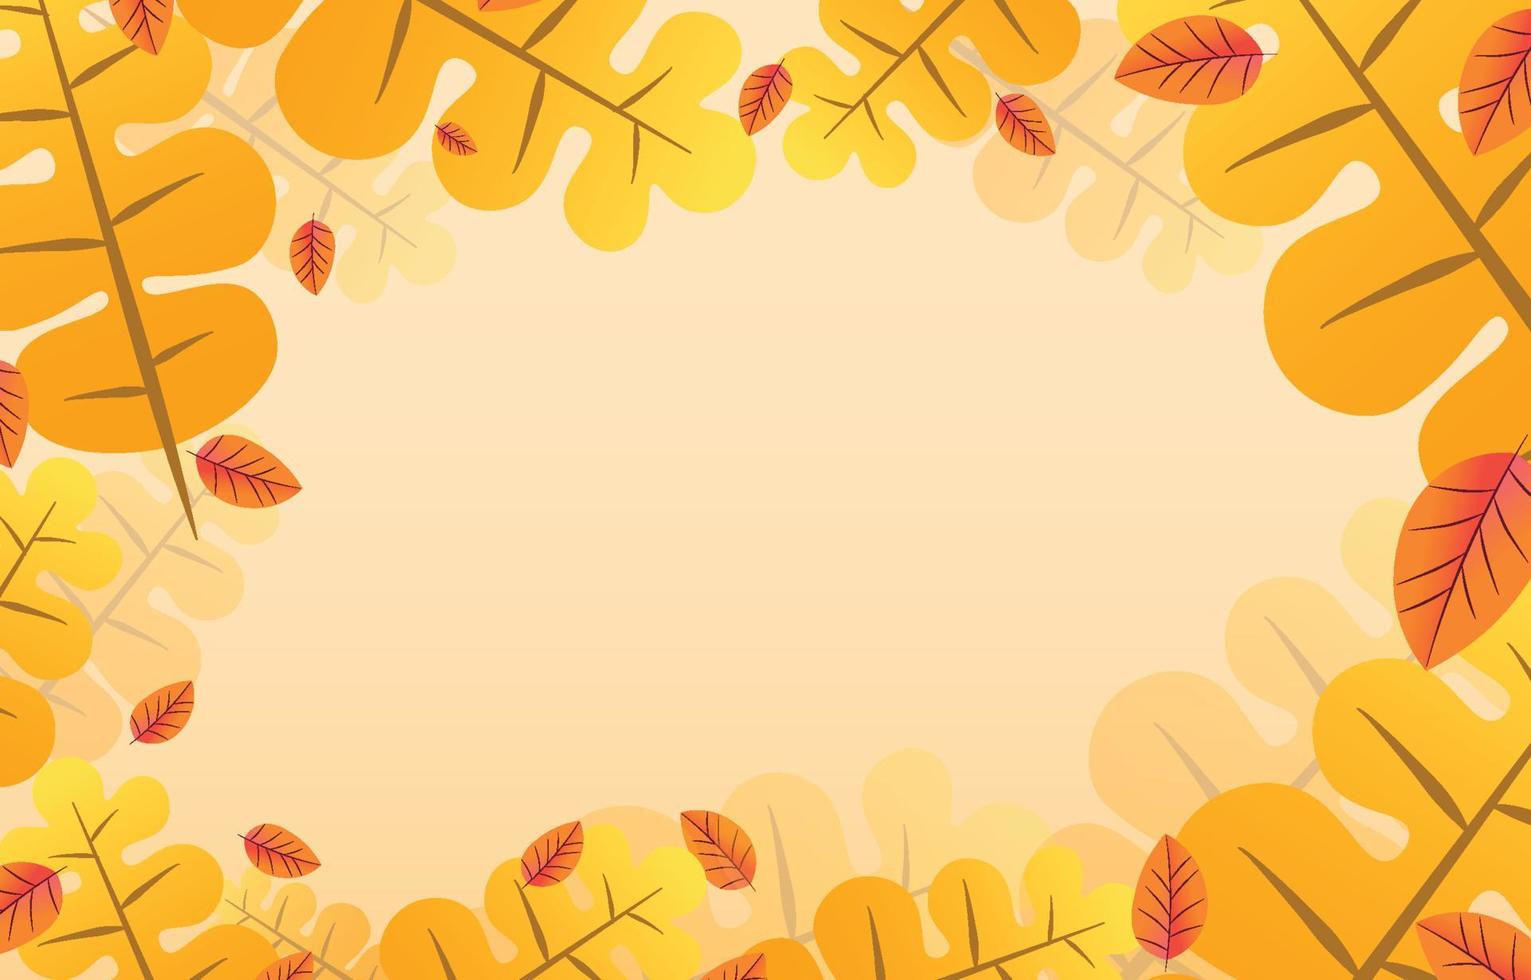 Herbsthintergrund mit Blättern goldgelb mit Leerzeichen. Banner Herbstkonzept. für Tapeten, Postkarten, Grußkarten, Webseiten, Online-Verkäufe. Vektor-Illustration. vektor